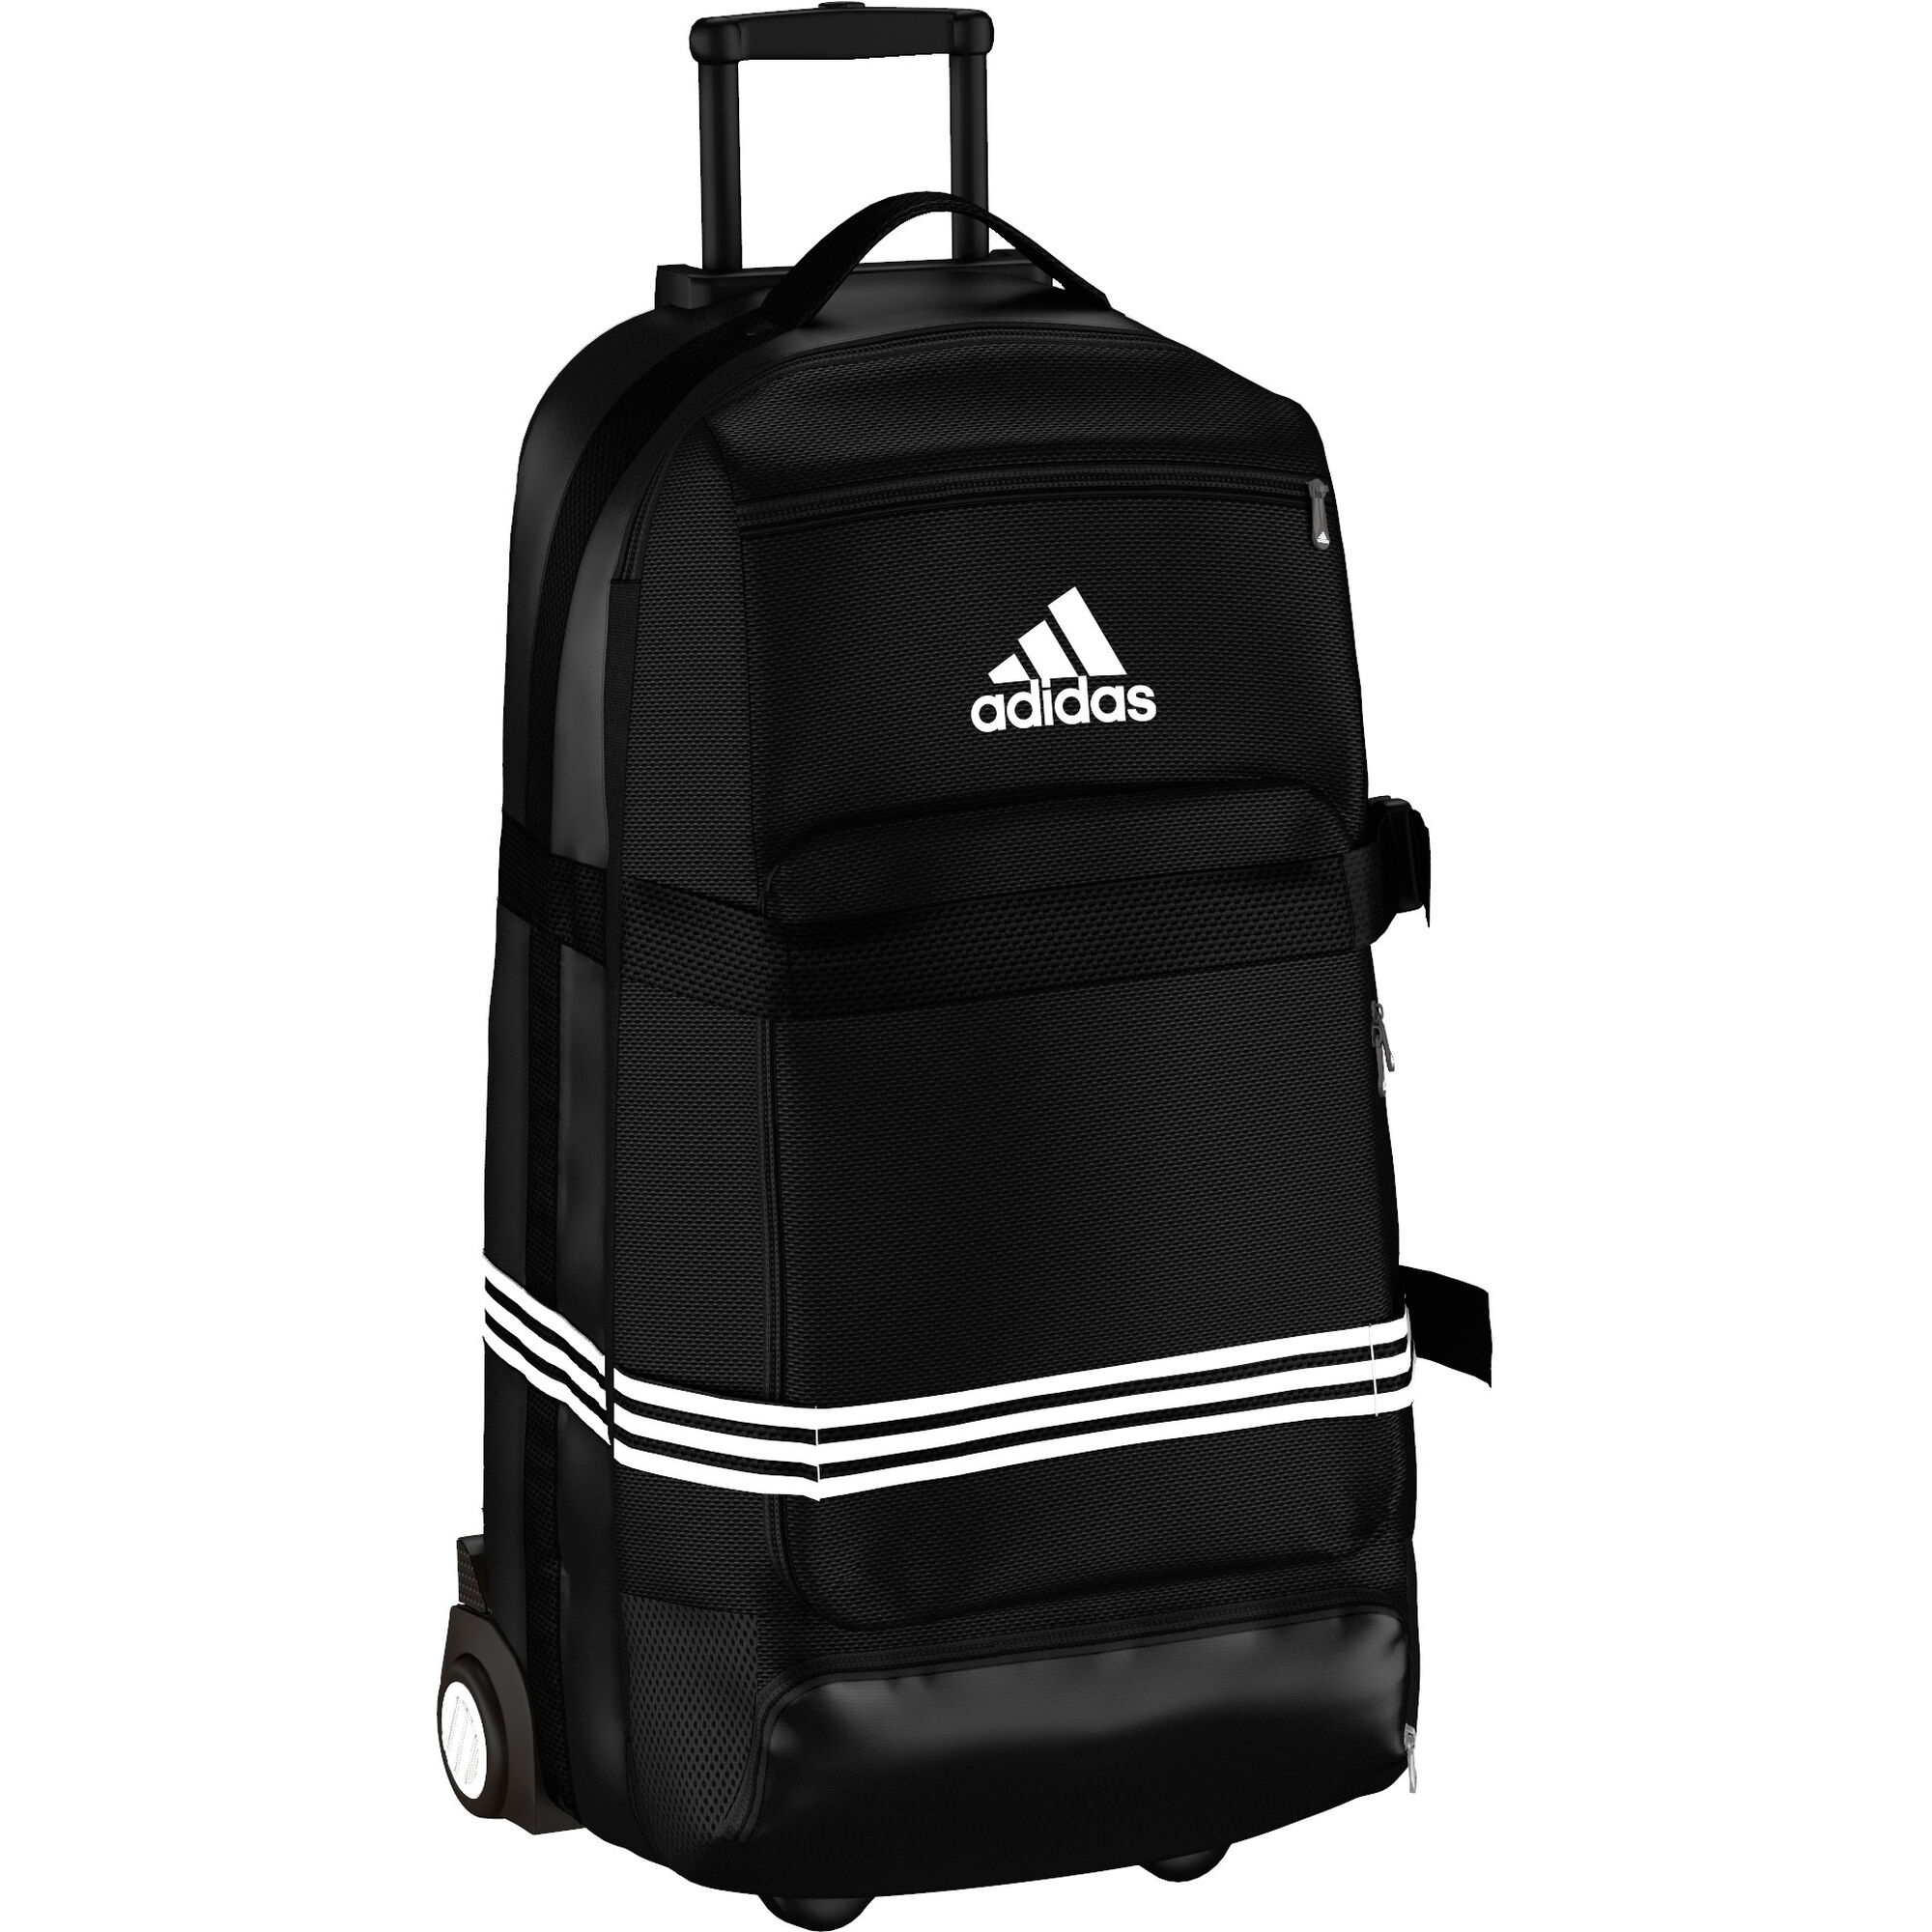 adidas travel trolley bags